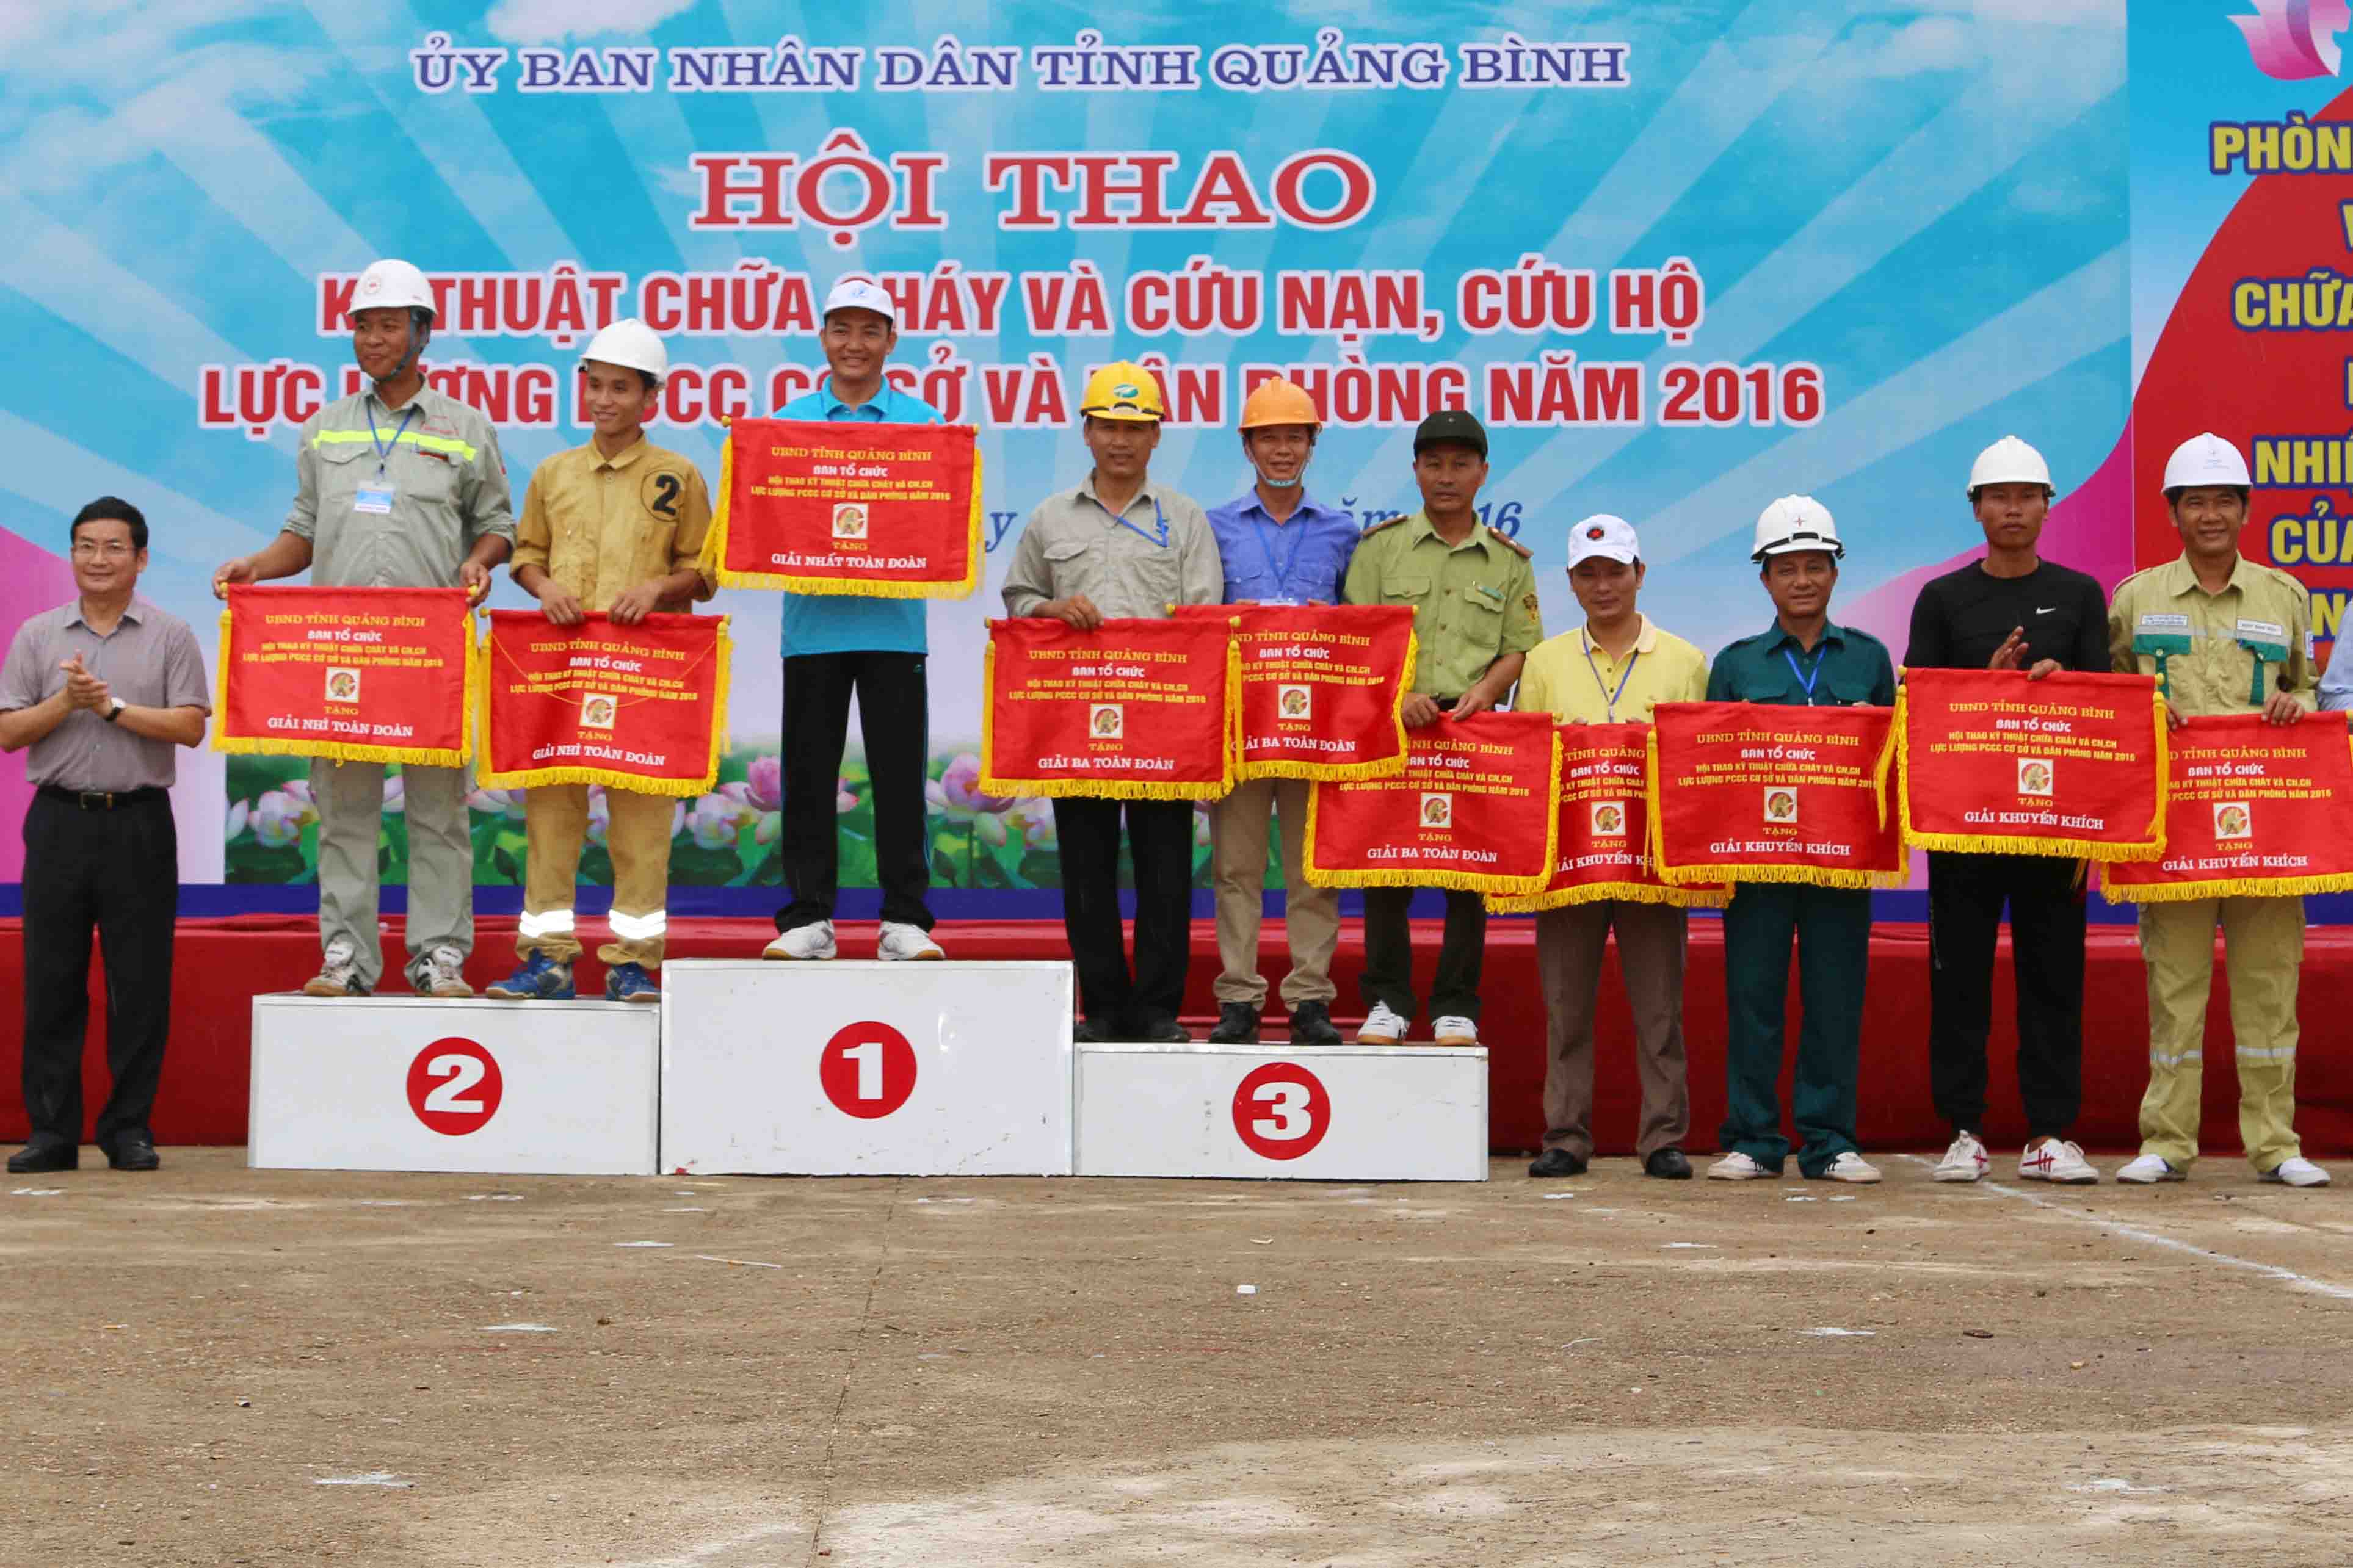 Đồng chí Trần Tiến Dũng - Phó Chủ tịch UBND tỉnh trao giải cho các đội đạt giải toàn đoàn